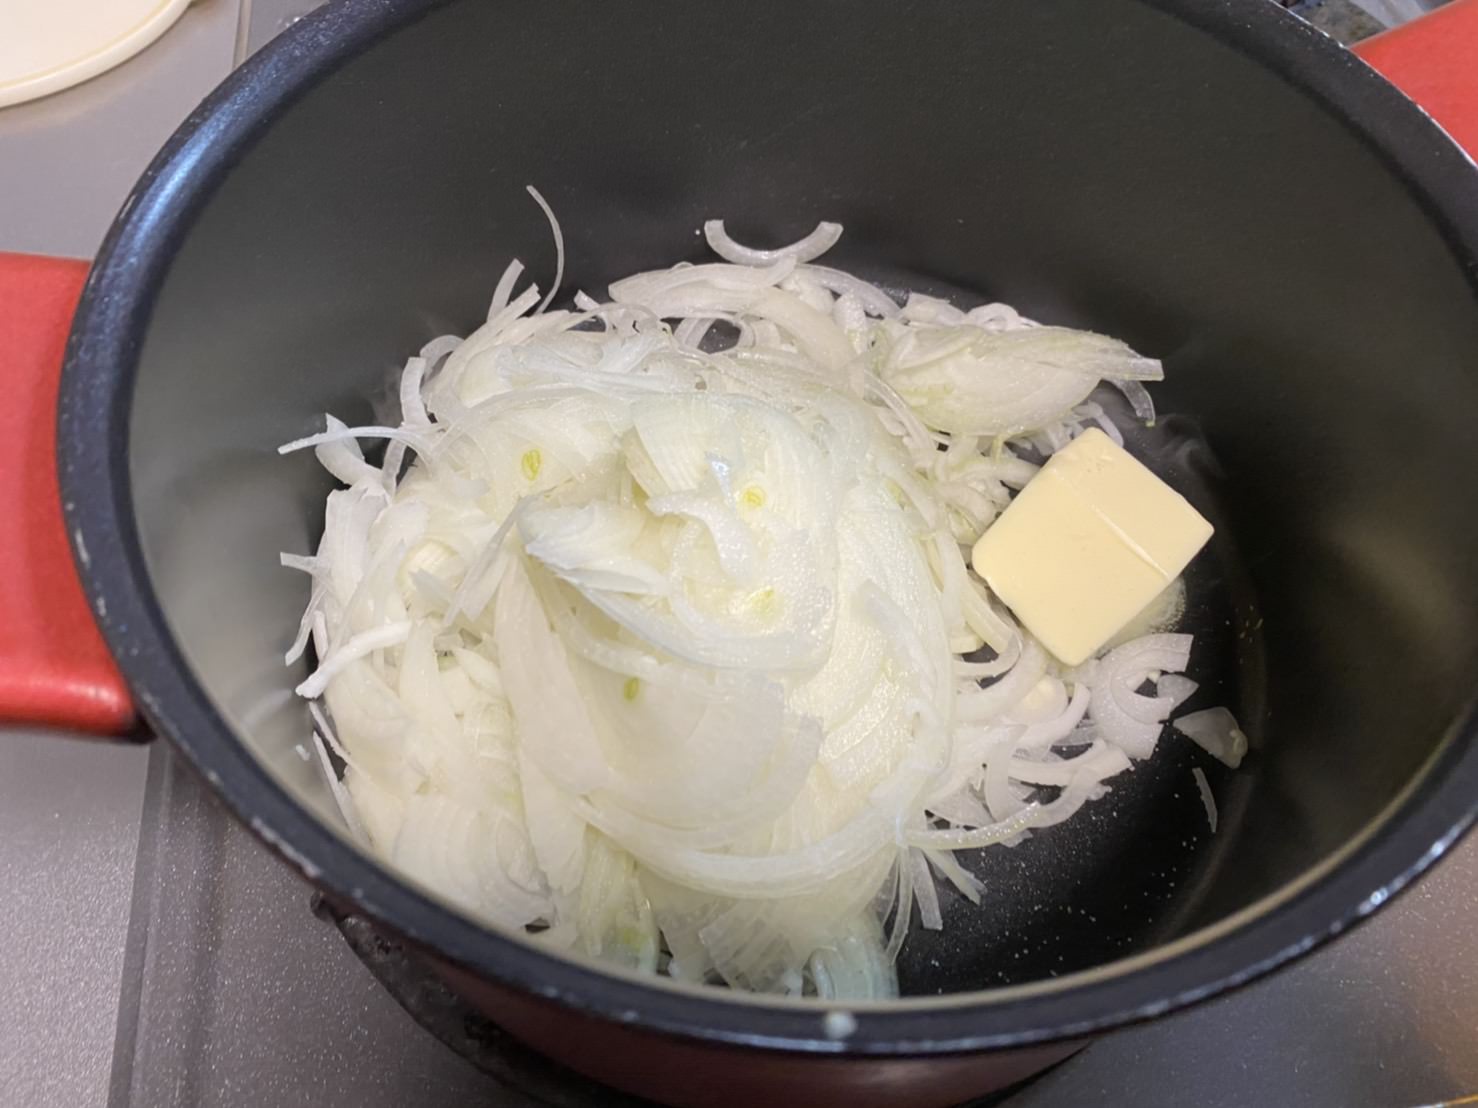 鍋にスライス玉ねぎとバター、塩を入れて火にかける様子の画像です。